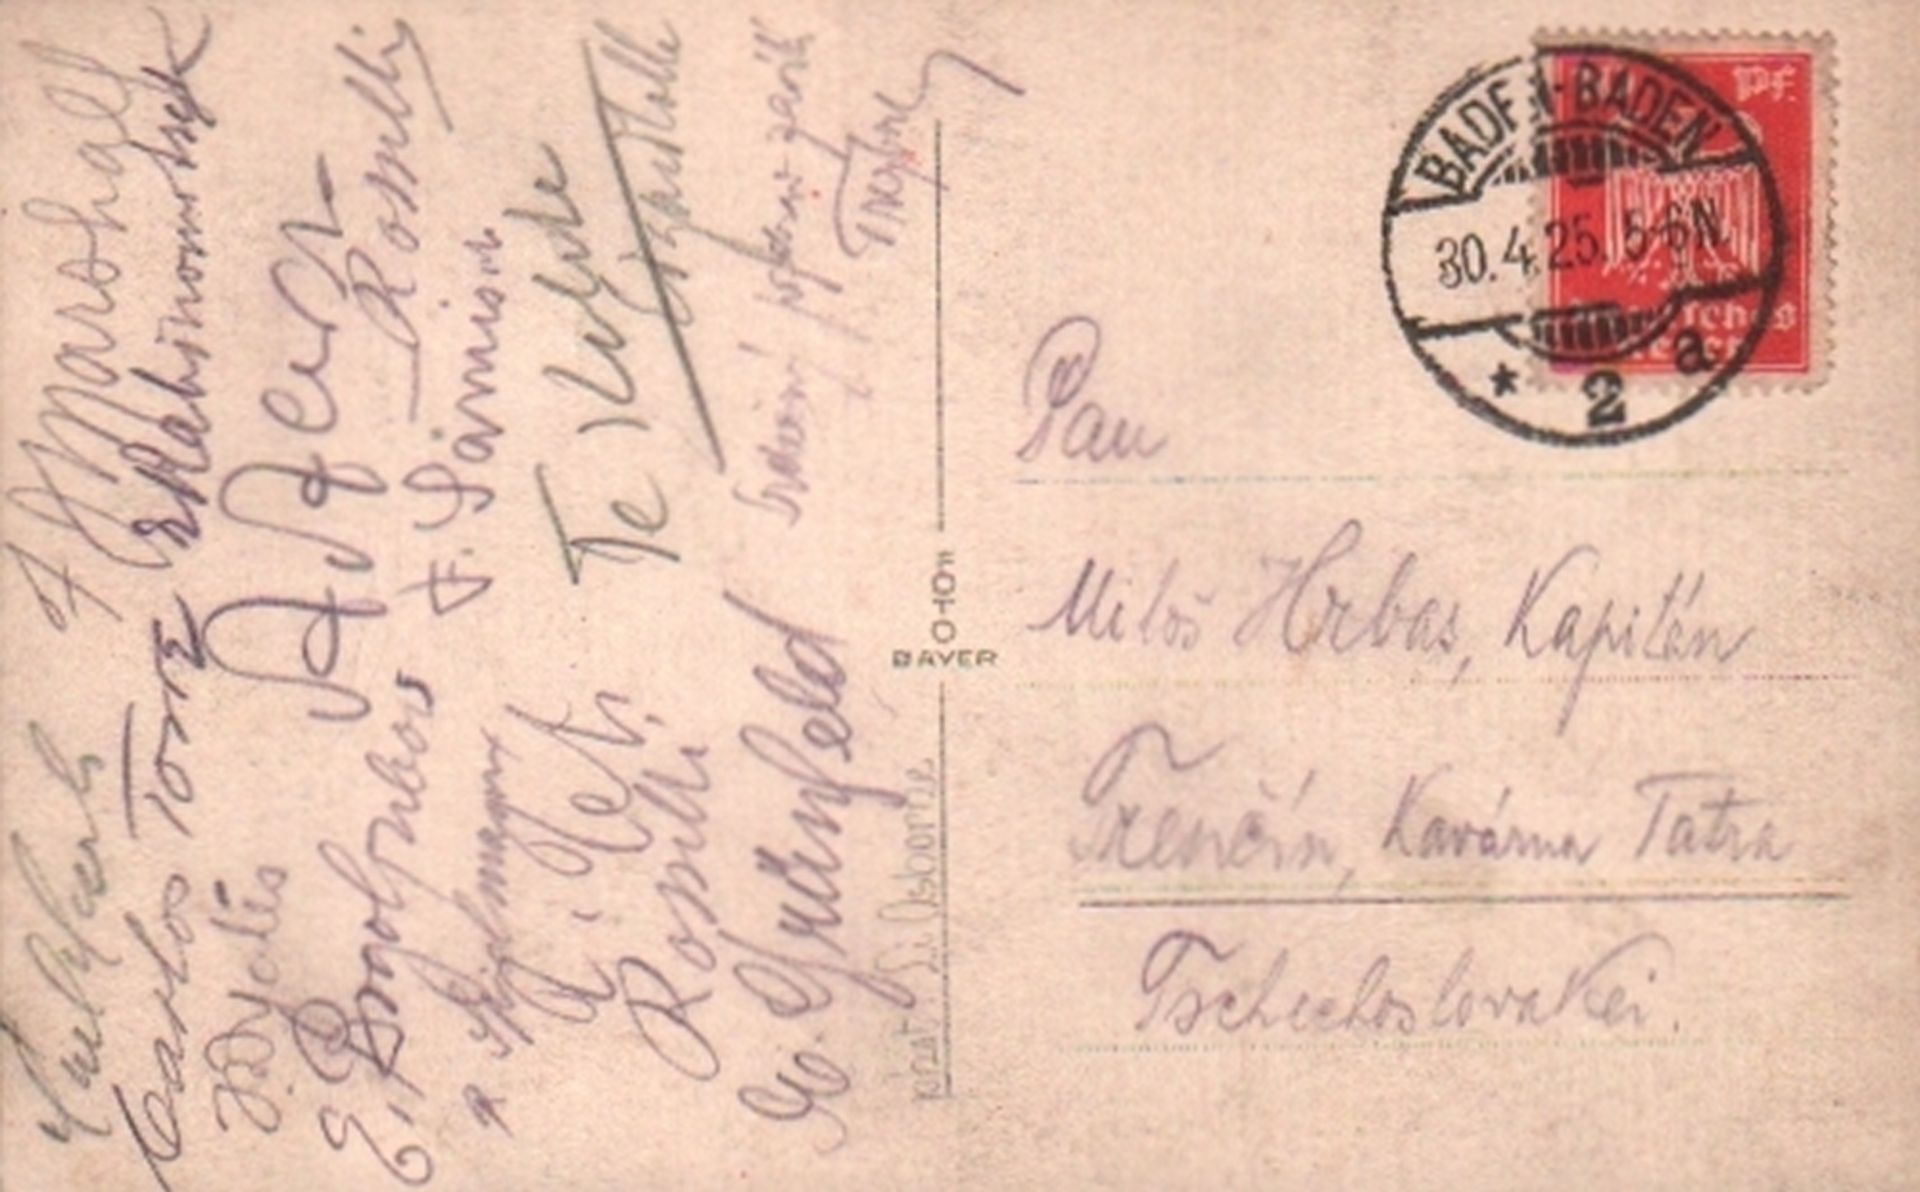 Baden – Baden 1925. Postalisch gelaufene, schwarzweiße Postkarte mit 16 eigenhändigen